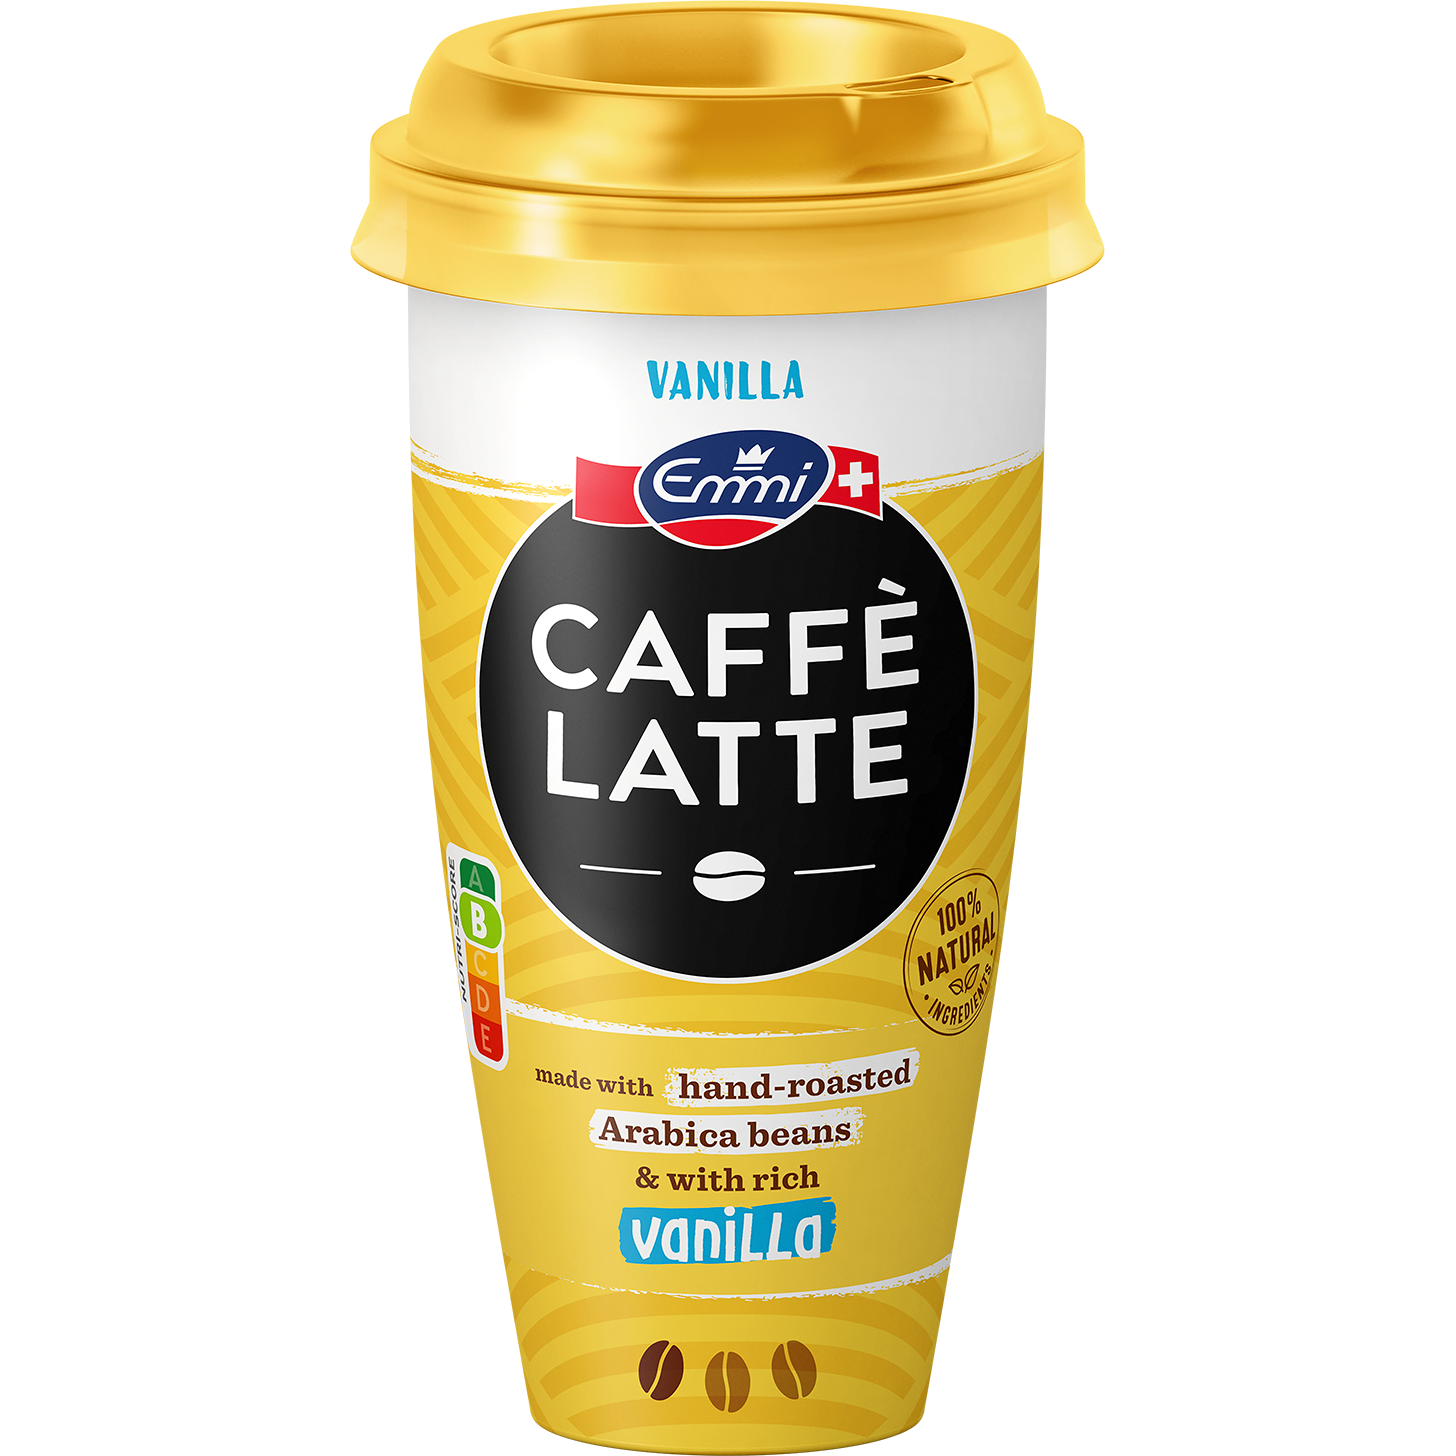 Emmi CAFFÈ LATTE Vanilla | Emmi Caffè Latte